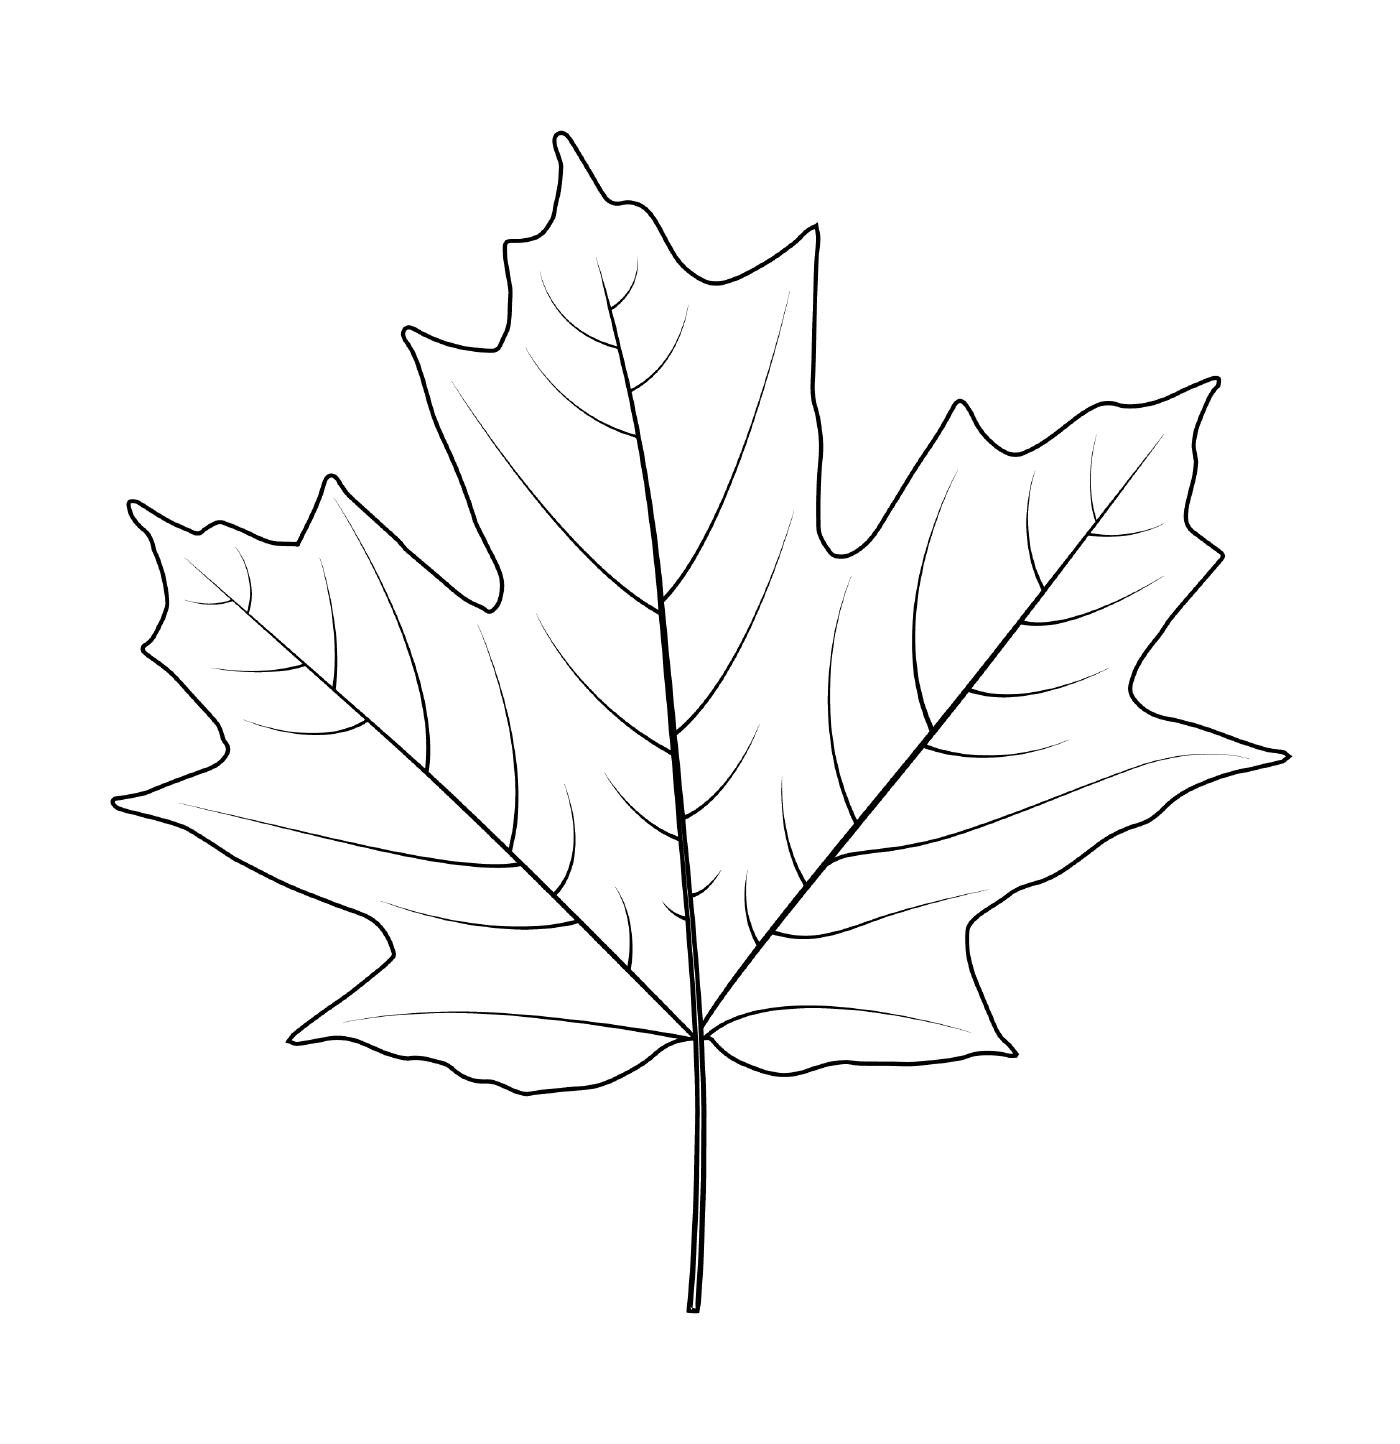  Silver maple leaf 